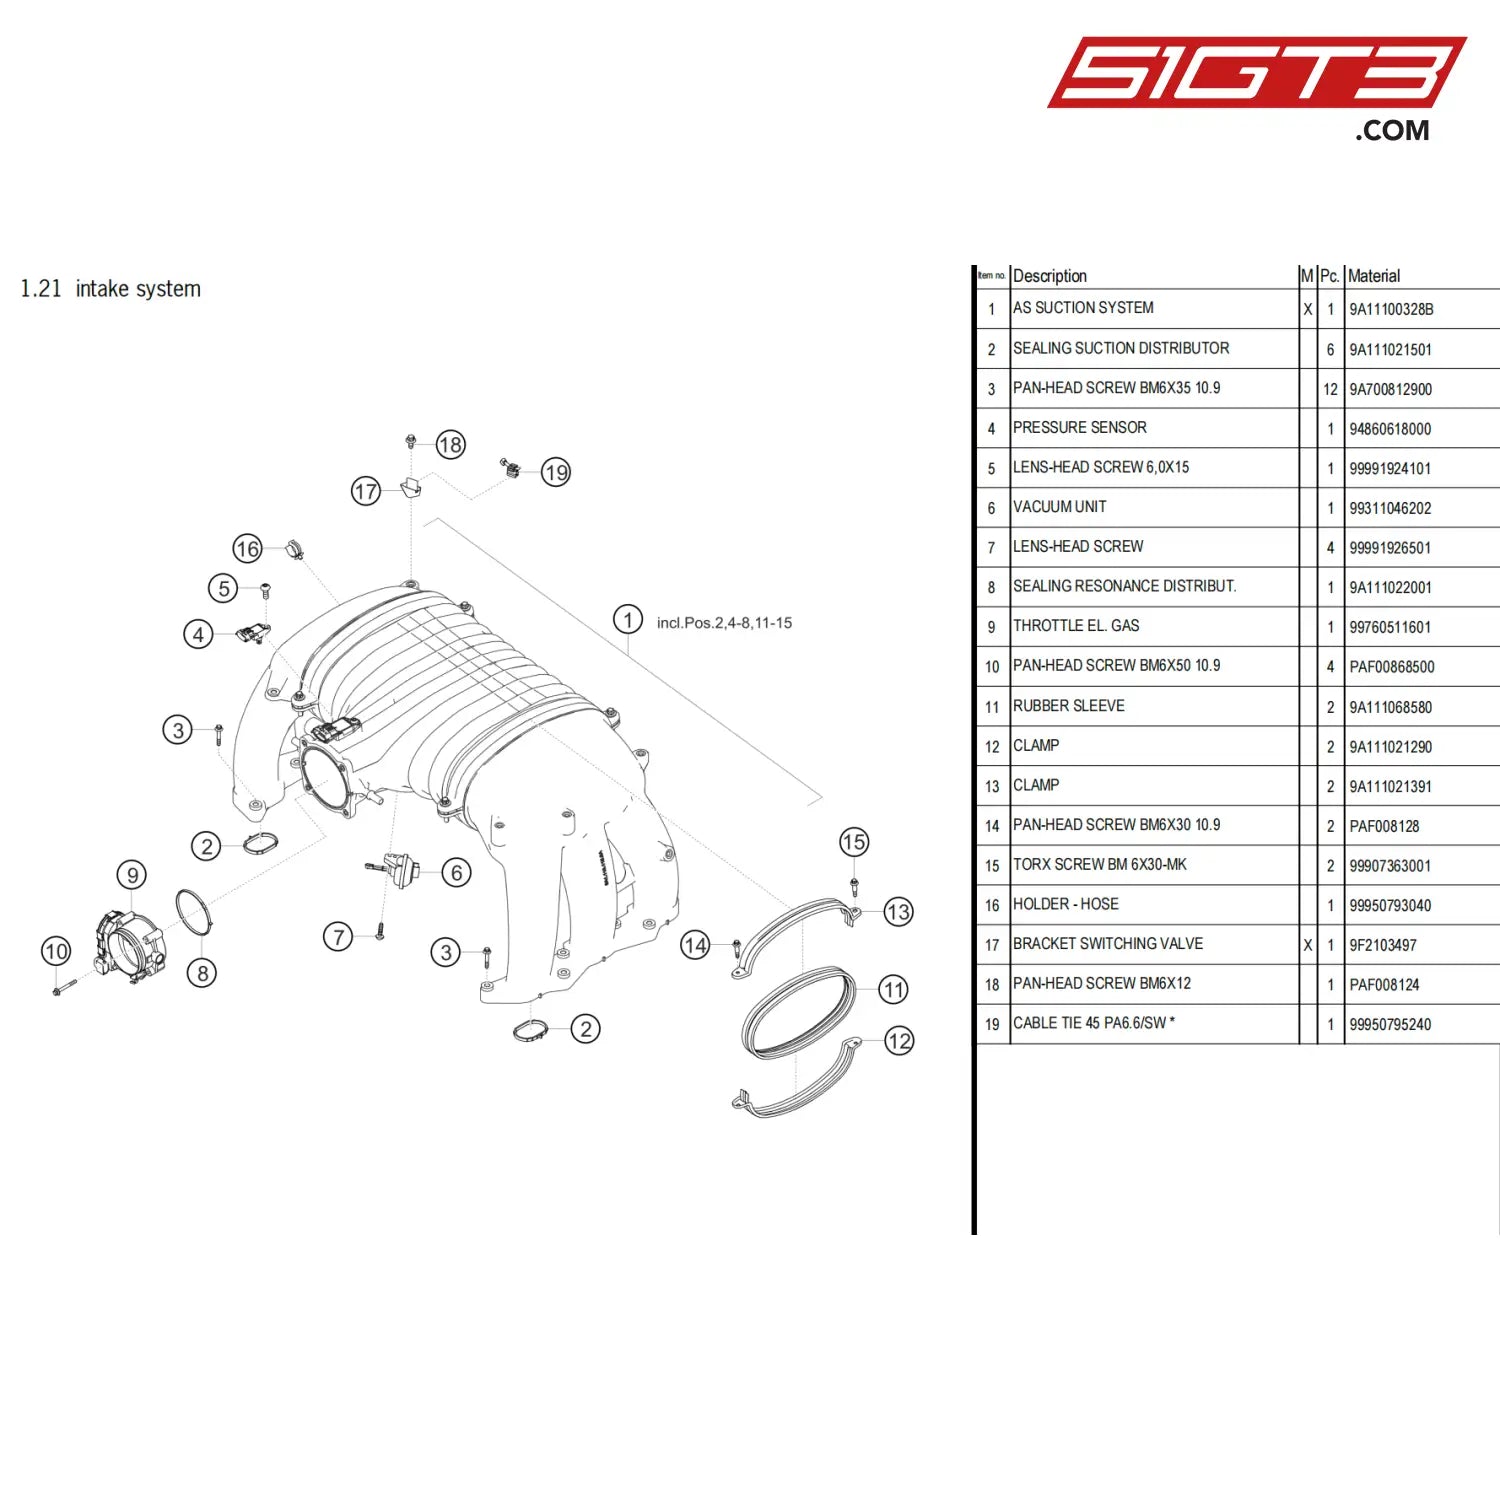 Bracket Switching Valve - 9F2103497 [Porsche 718 Cayman Gt4 Clubsport] Intake System